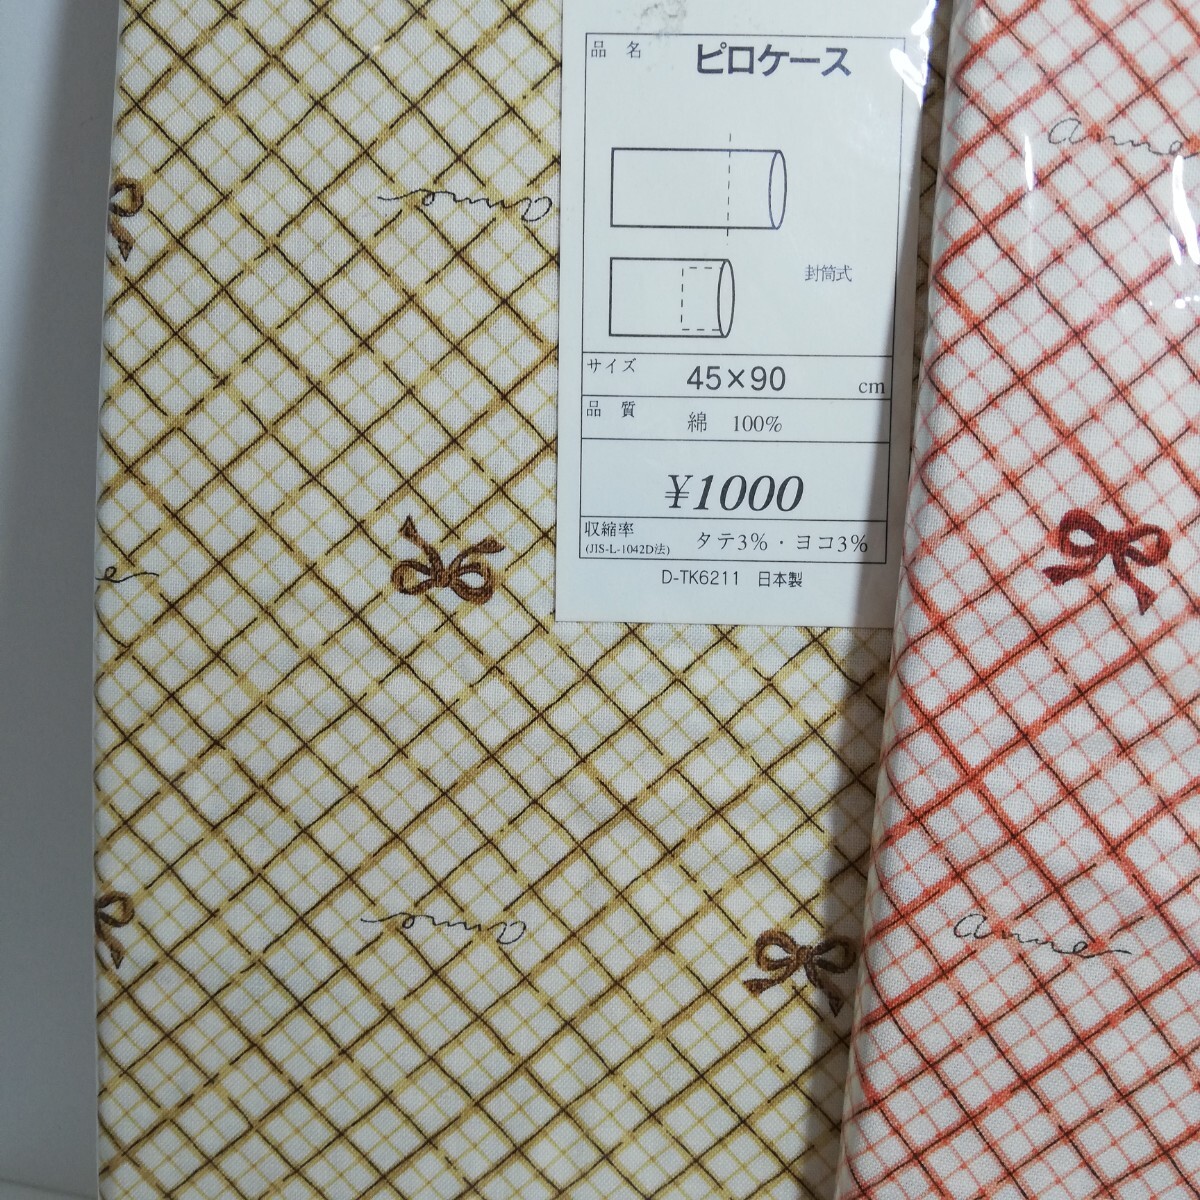 Fabricing リボンクロス柄 ピロケース 枕カバー イエロー・オレンジ 45cm×90cm 2点セット 未使用品 日本製 の画像3